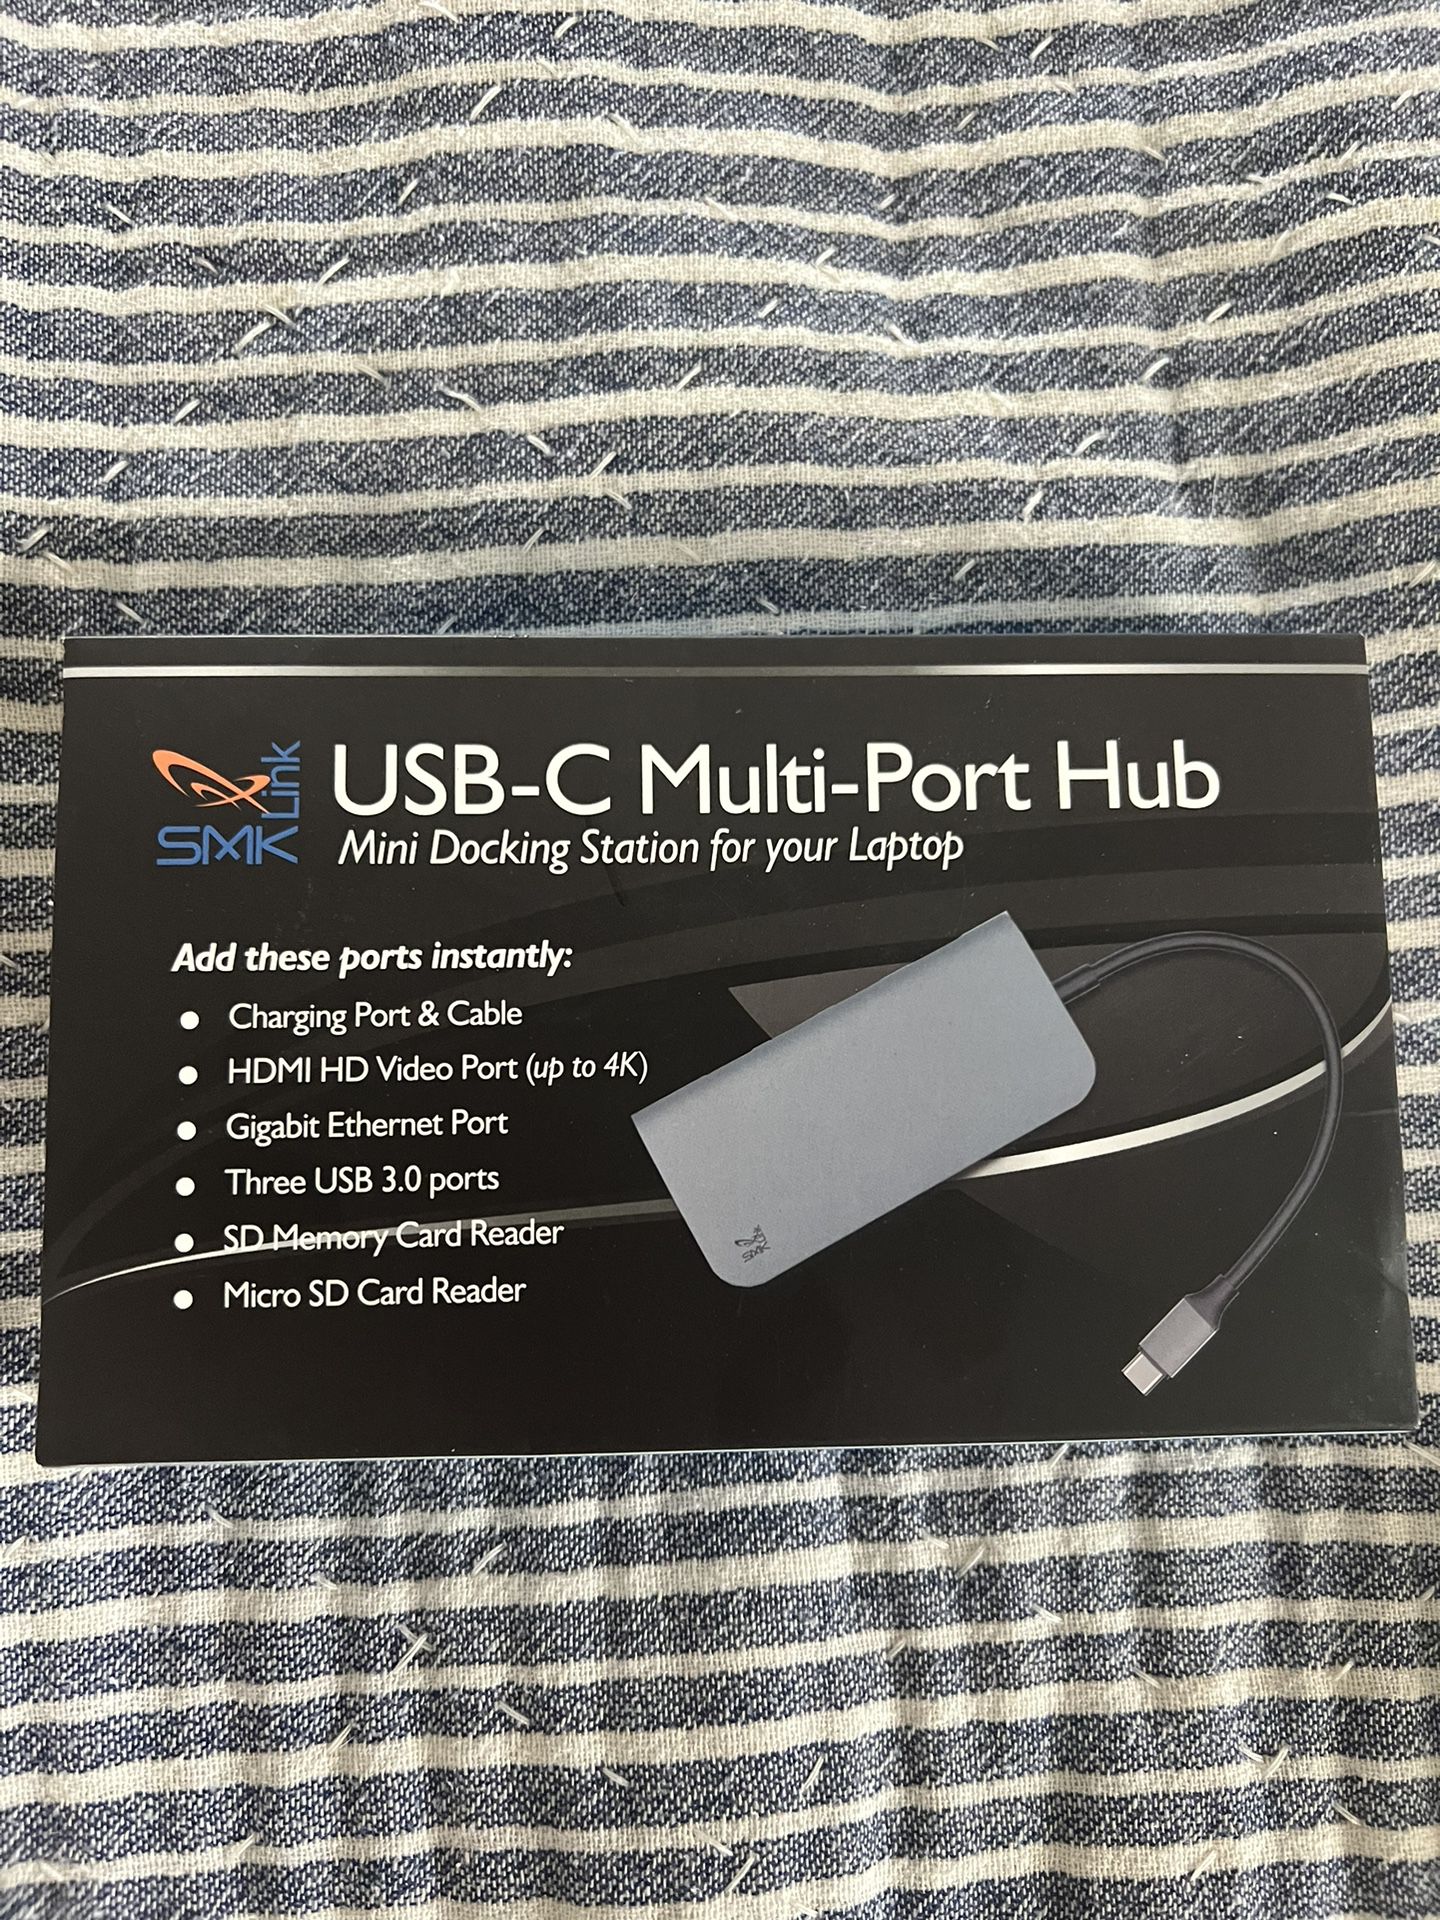 USB-C Multi-Port hub Mini Docking Station